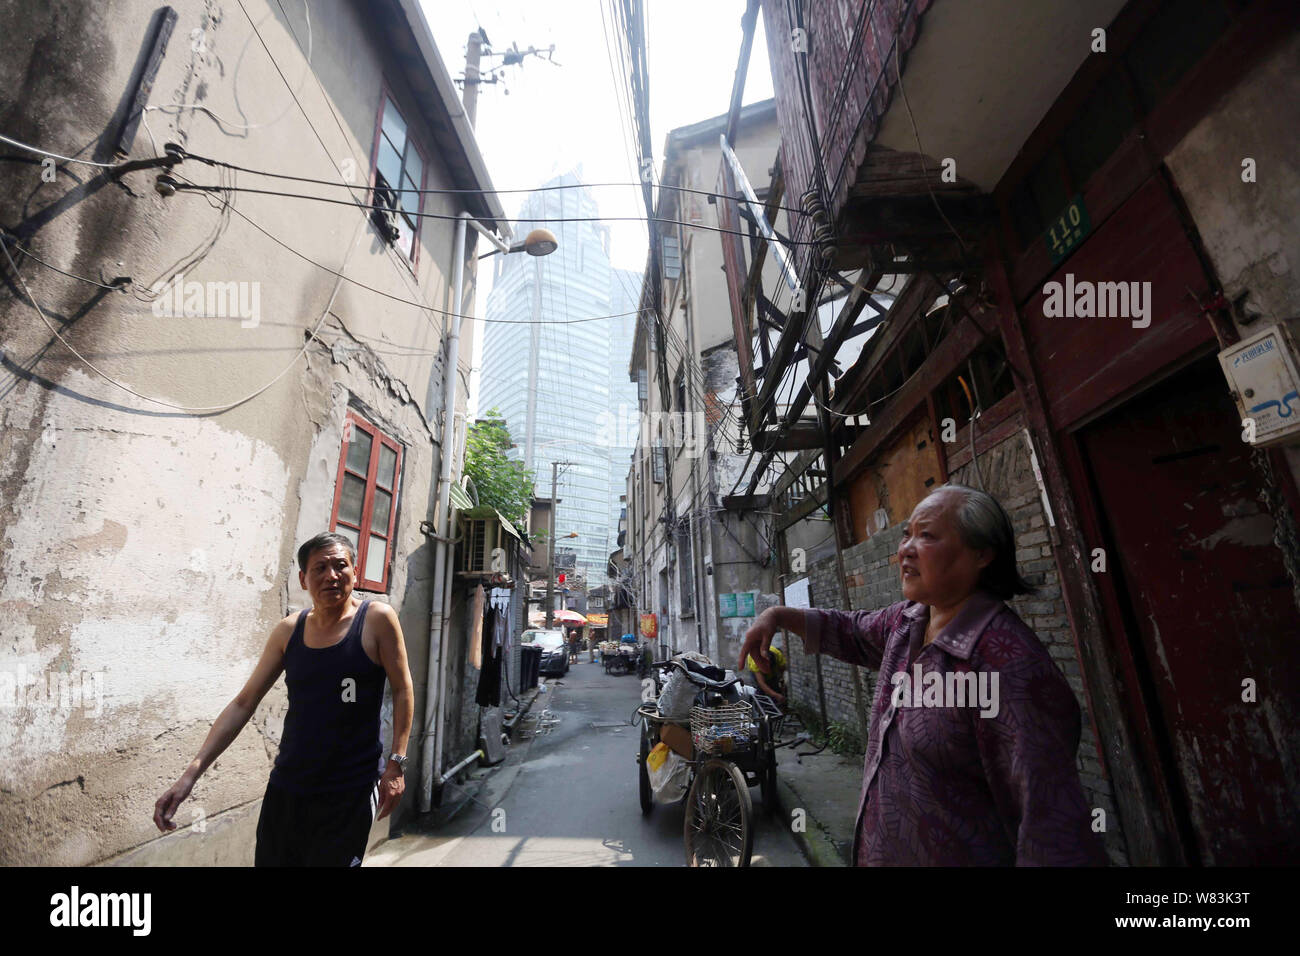 ------ Lokale chinesische Bewohner Spaziergang vorbei an alten Häusern entlang einer Spur zu einer Barackensiedlung für Wiederaufbau in Shanghai, China, 27. Juli 201 demontiert werden Stockfoto